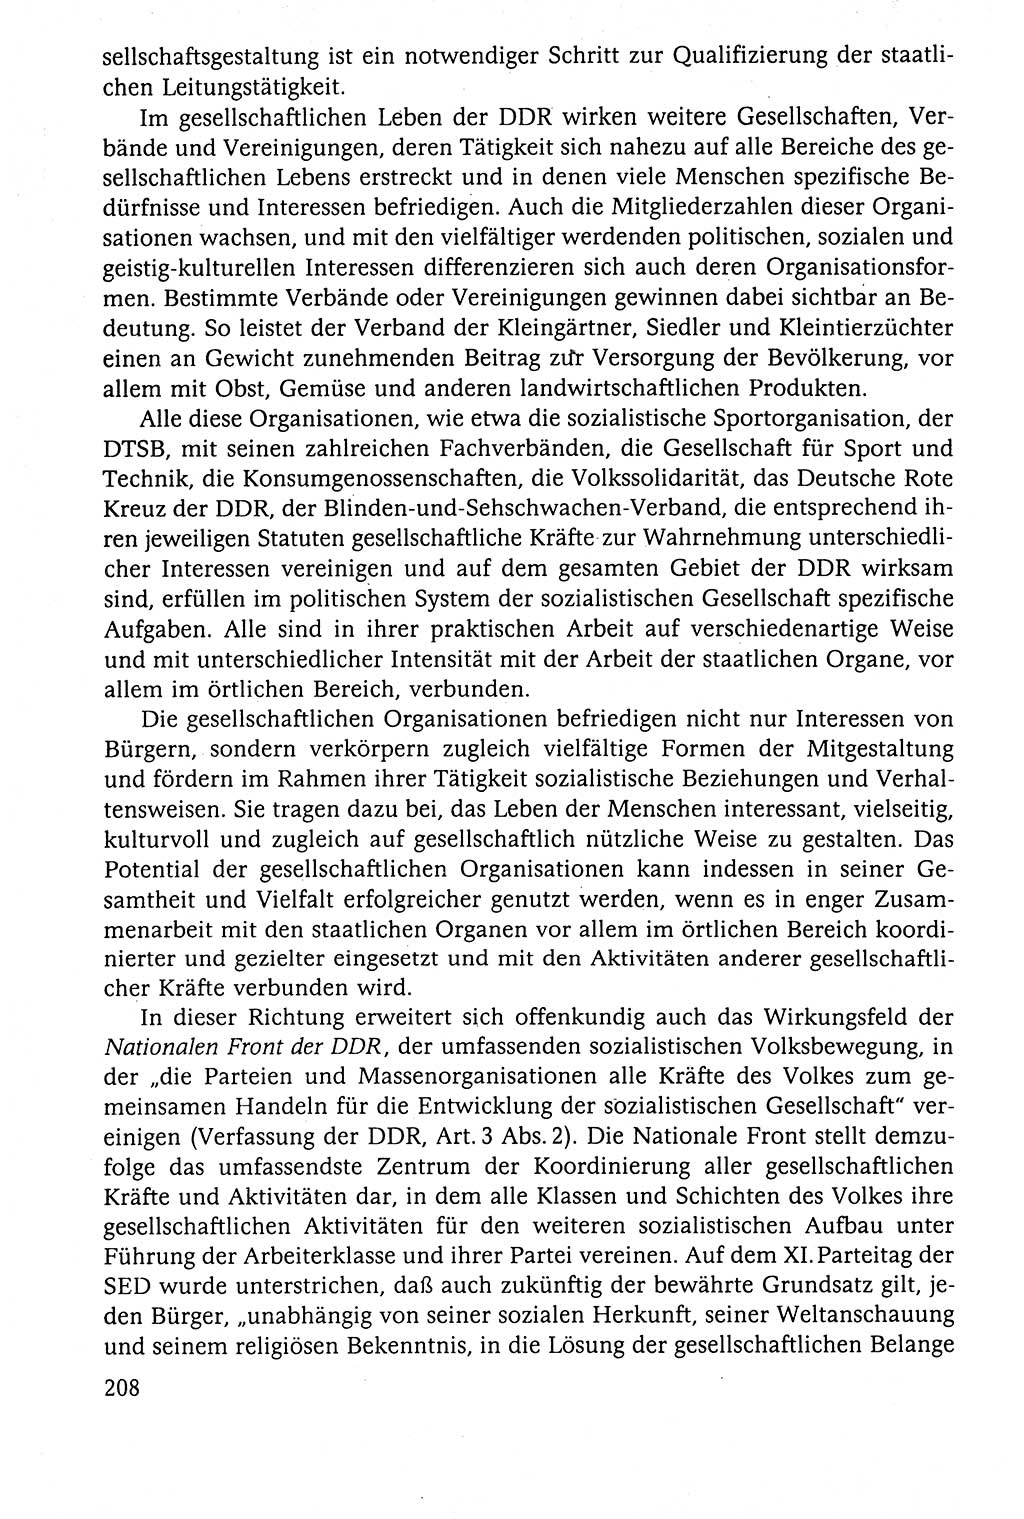 Der Staat im politischen System der DDR (Deutsche Demokratische Republik) 1986, Seite 208 (St. pol. Sys. DDR 1986, S. 208)